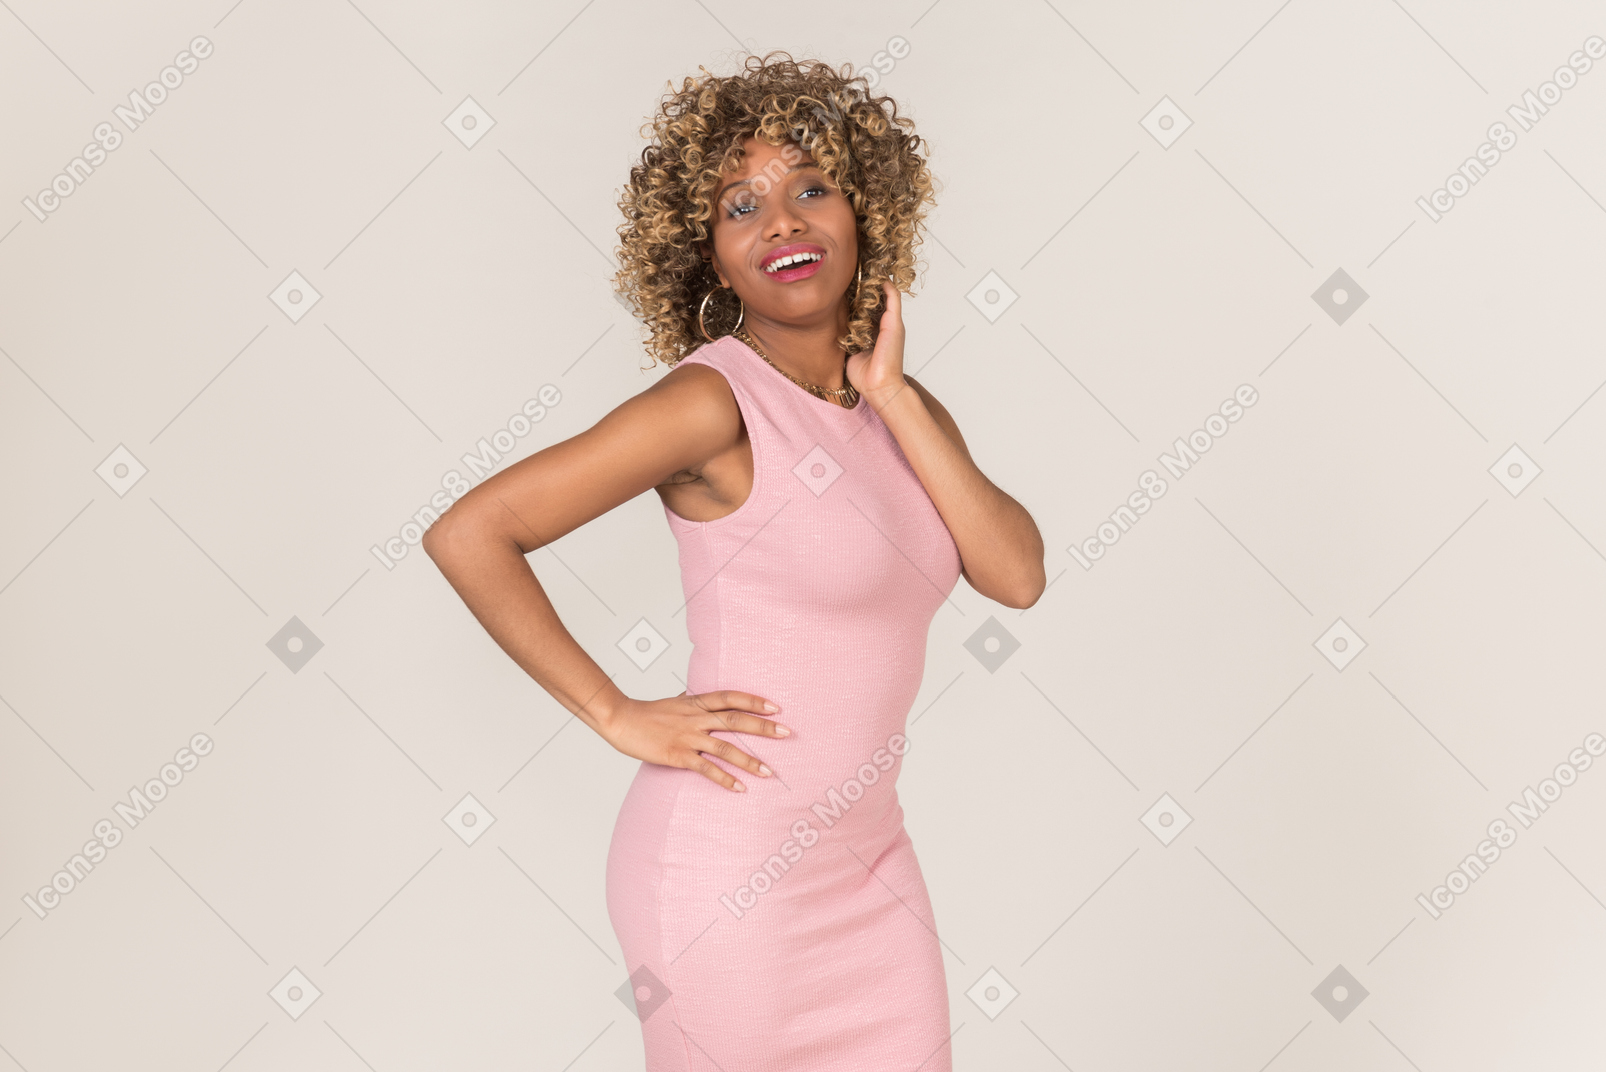 Una mujer vestida de rosa y con la mano en la cintura arreglándose el pelo.